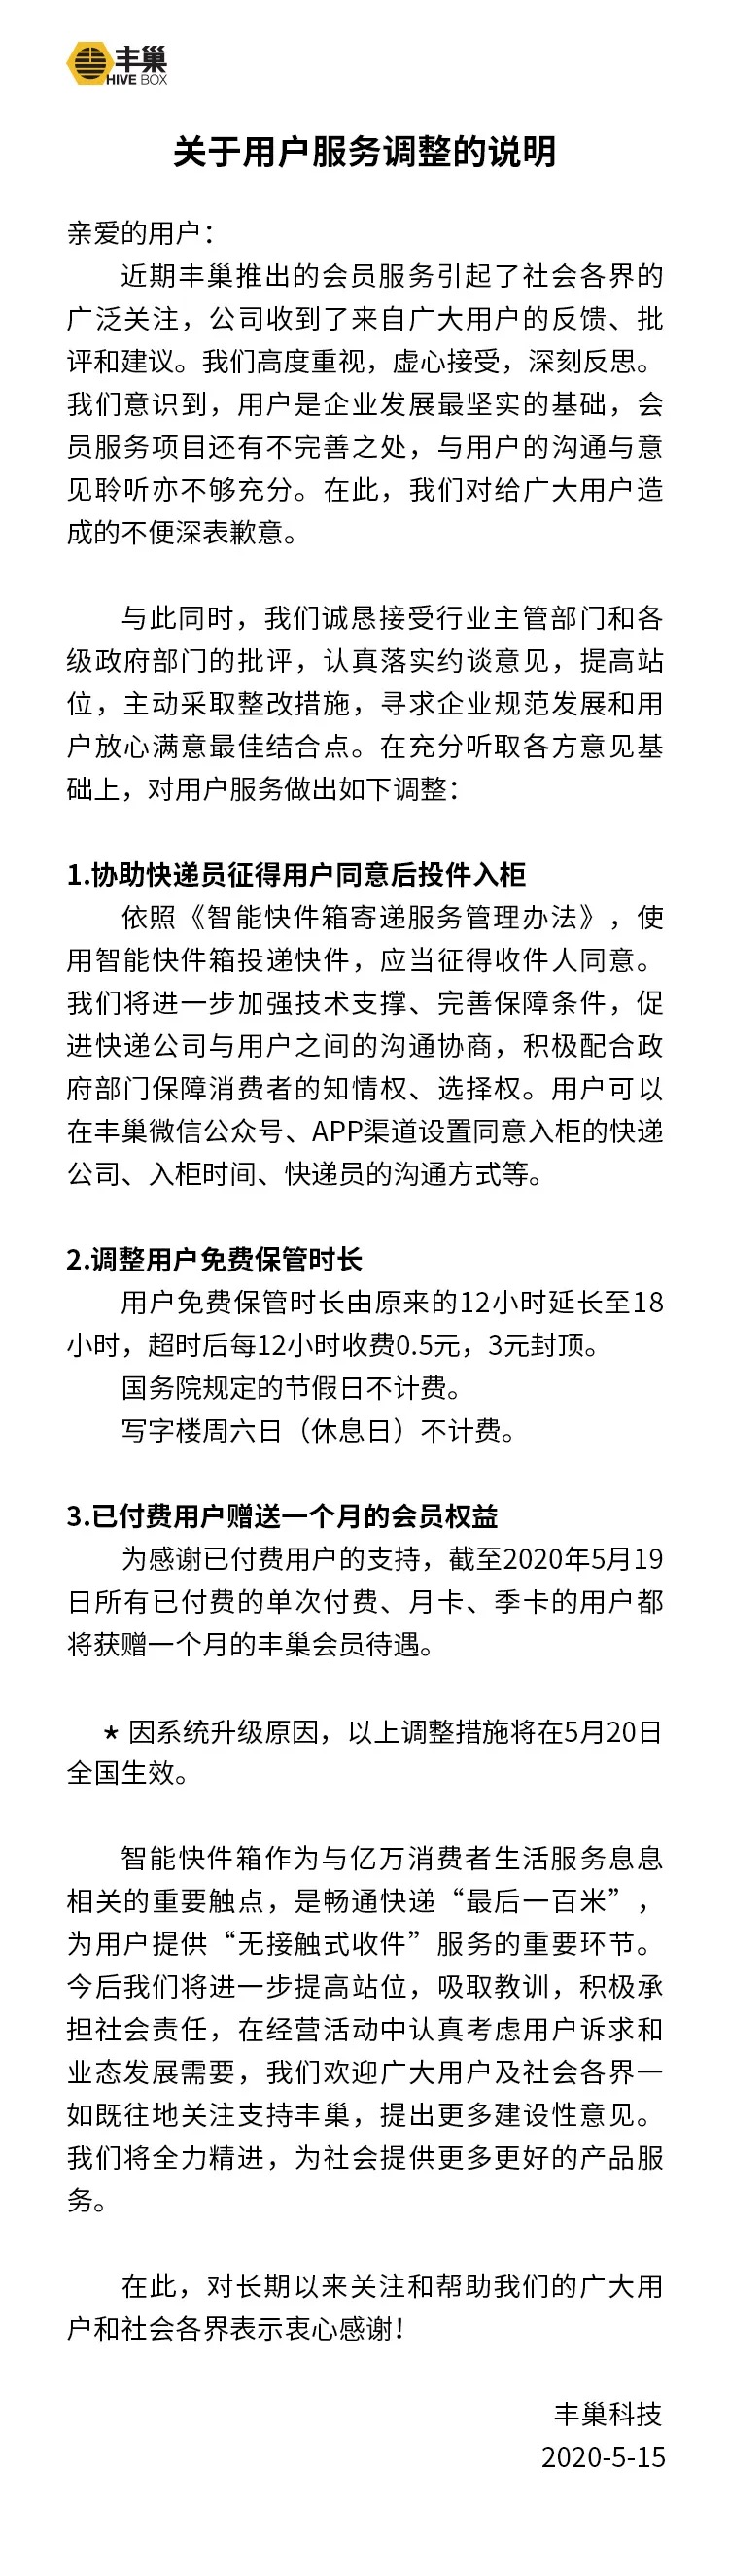 丰巢致歉并调整服务：免费保管时长延长至18小时-中国网地产